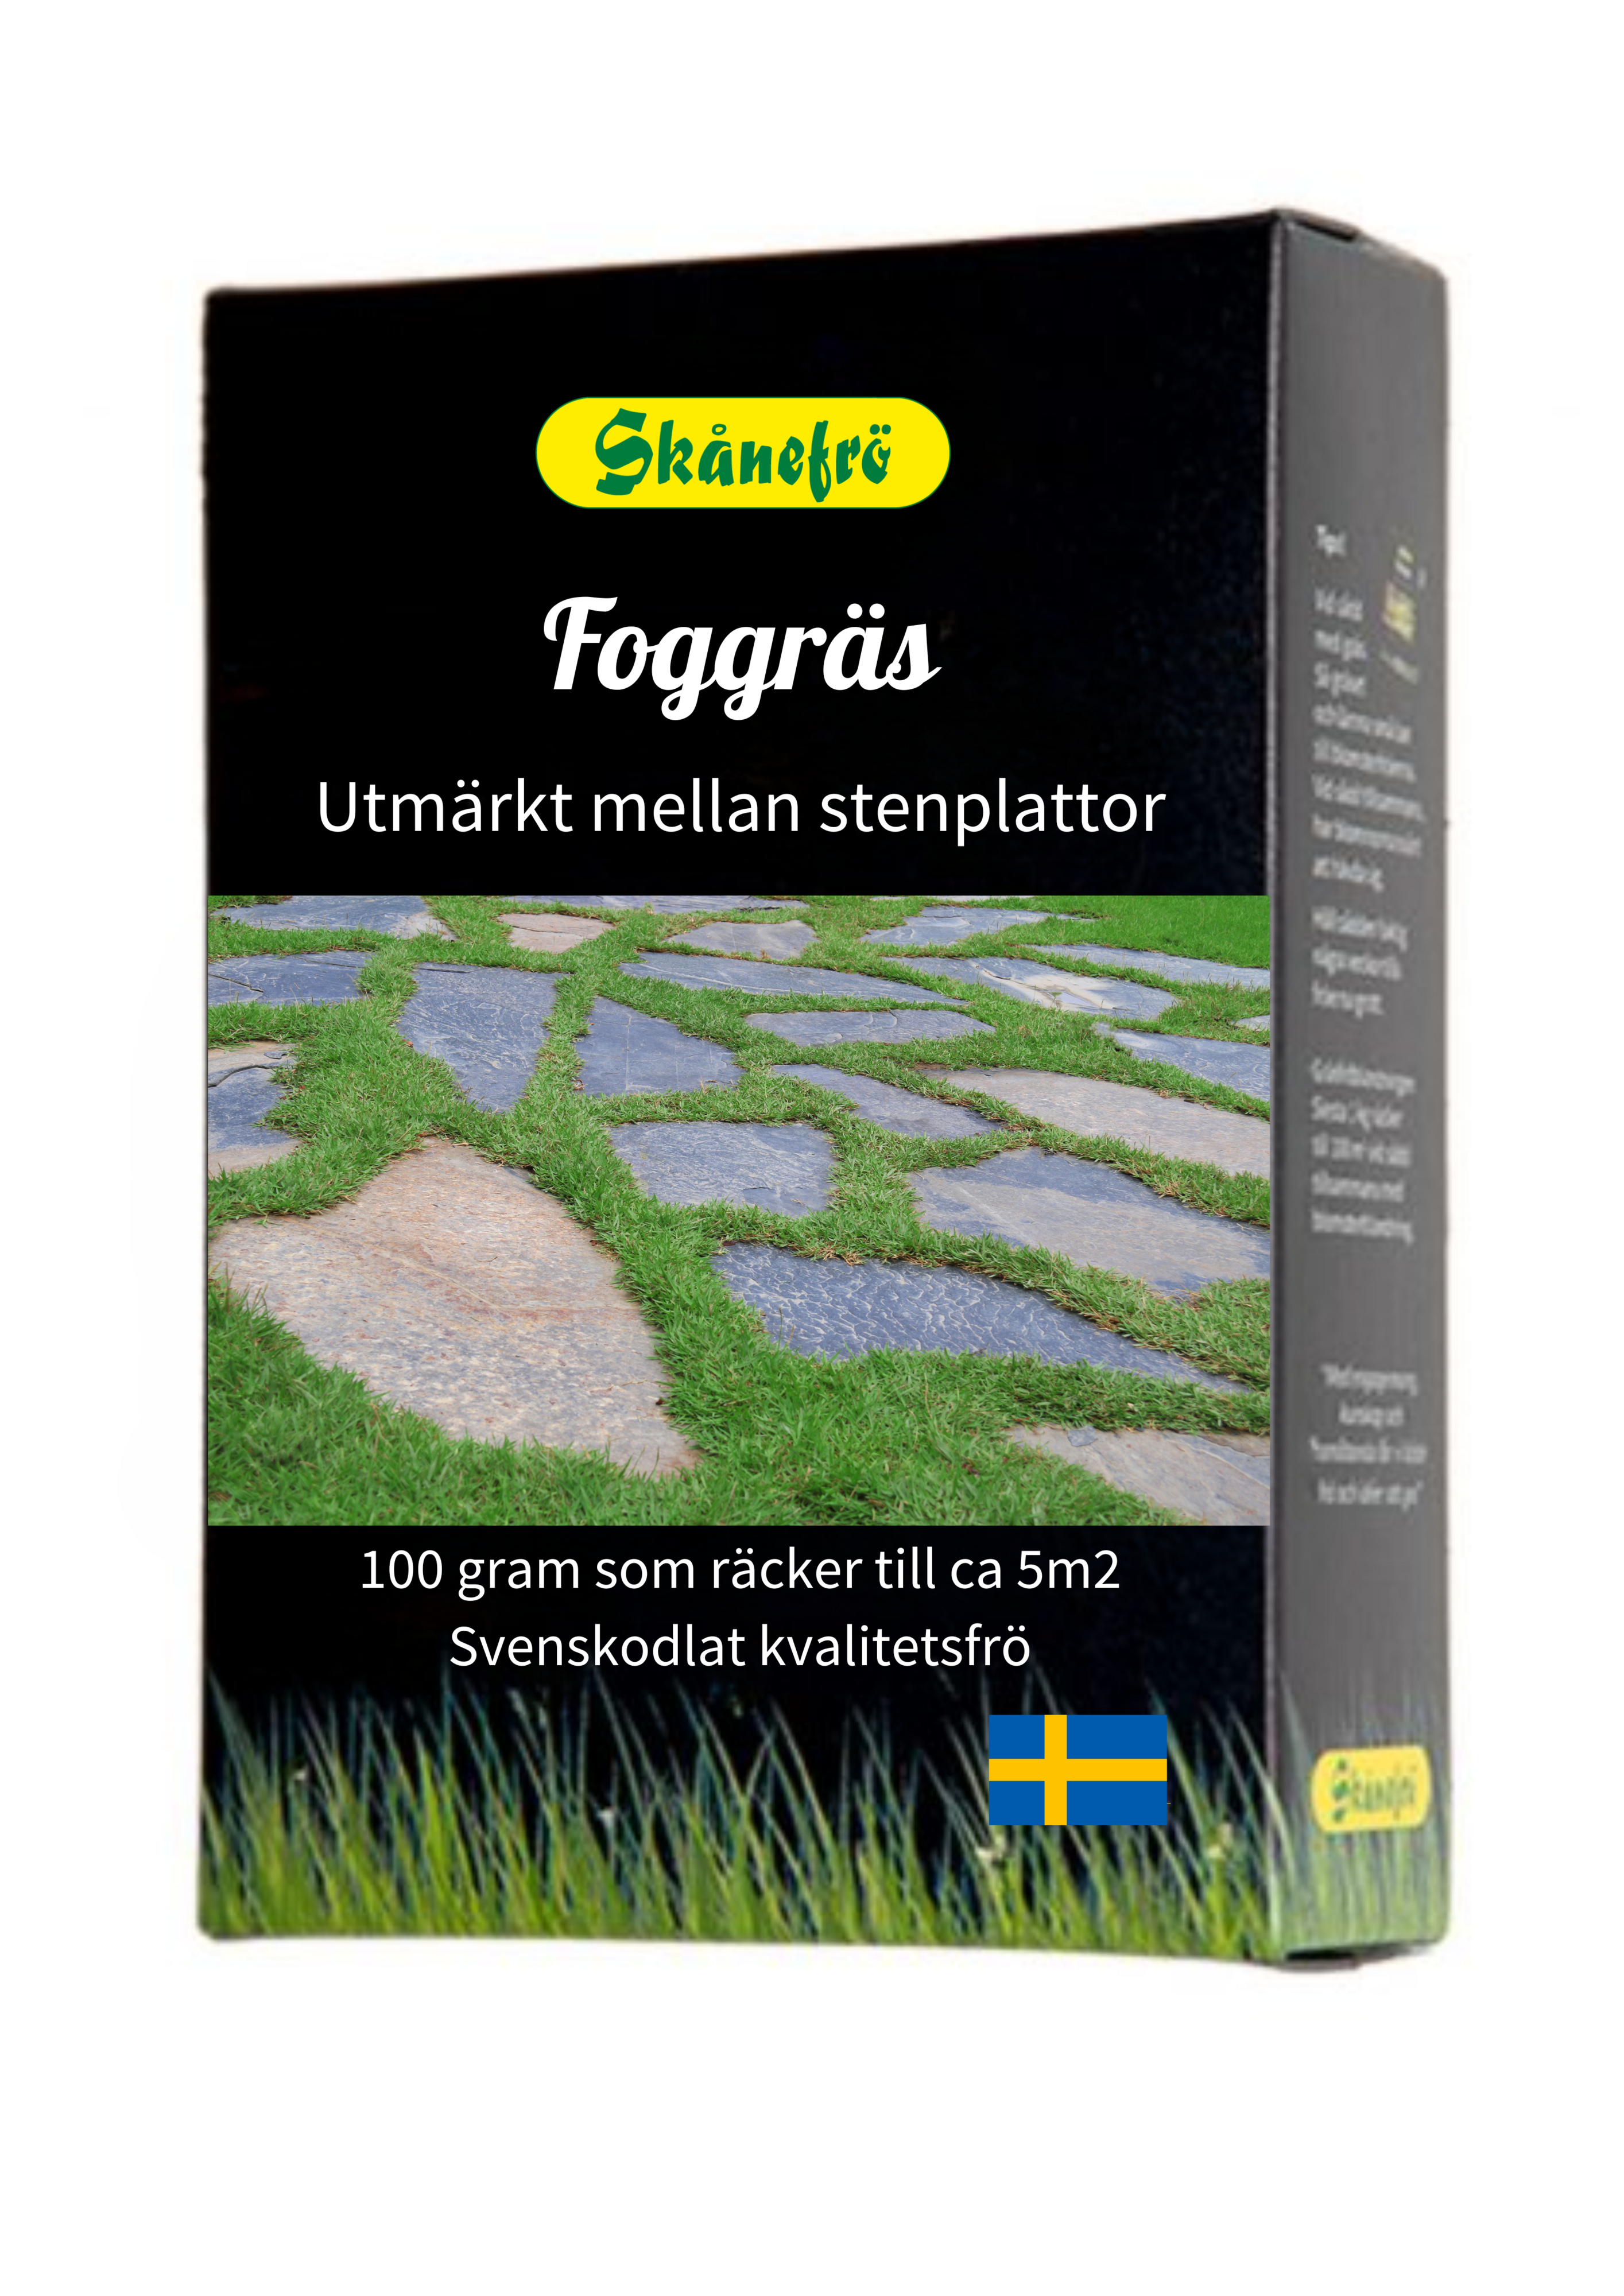 Foggräs Skånefrö 100g